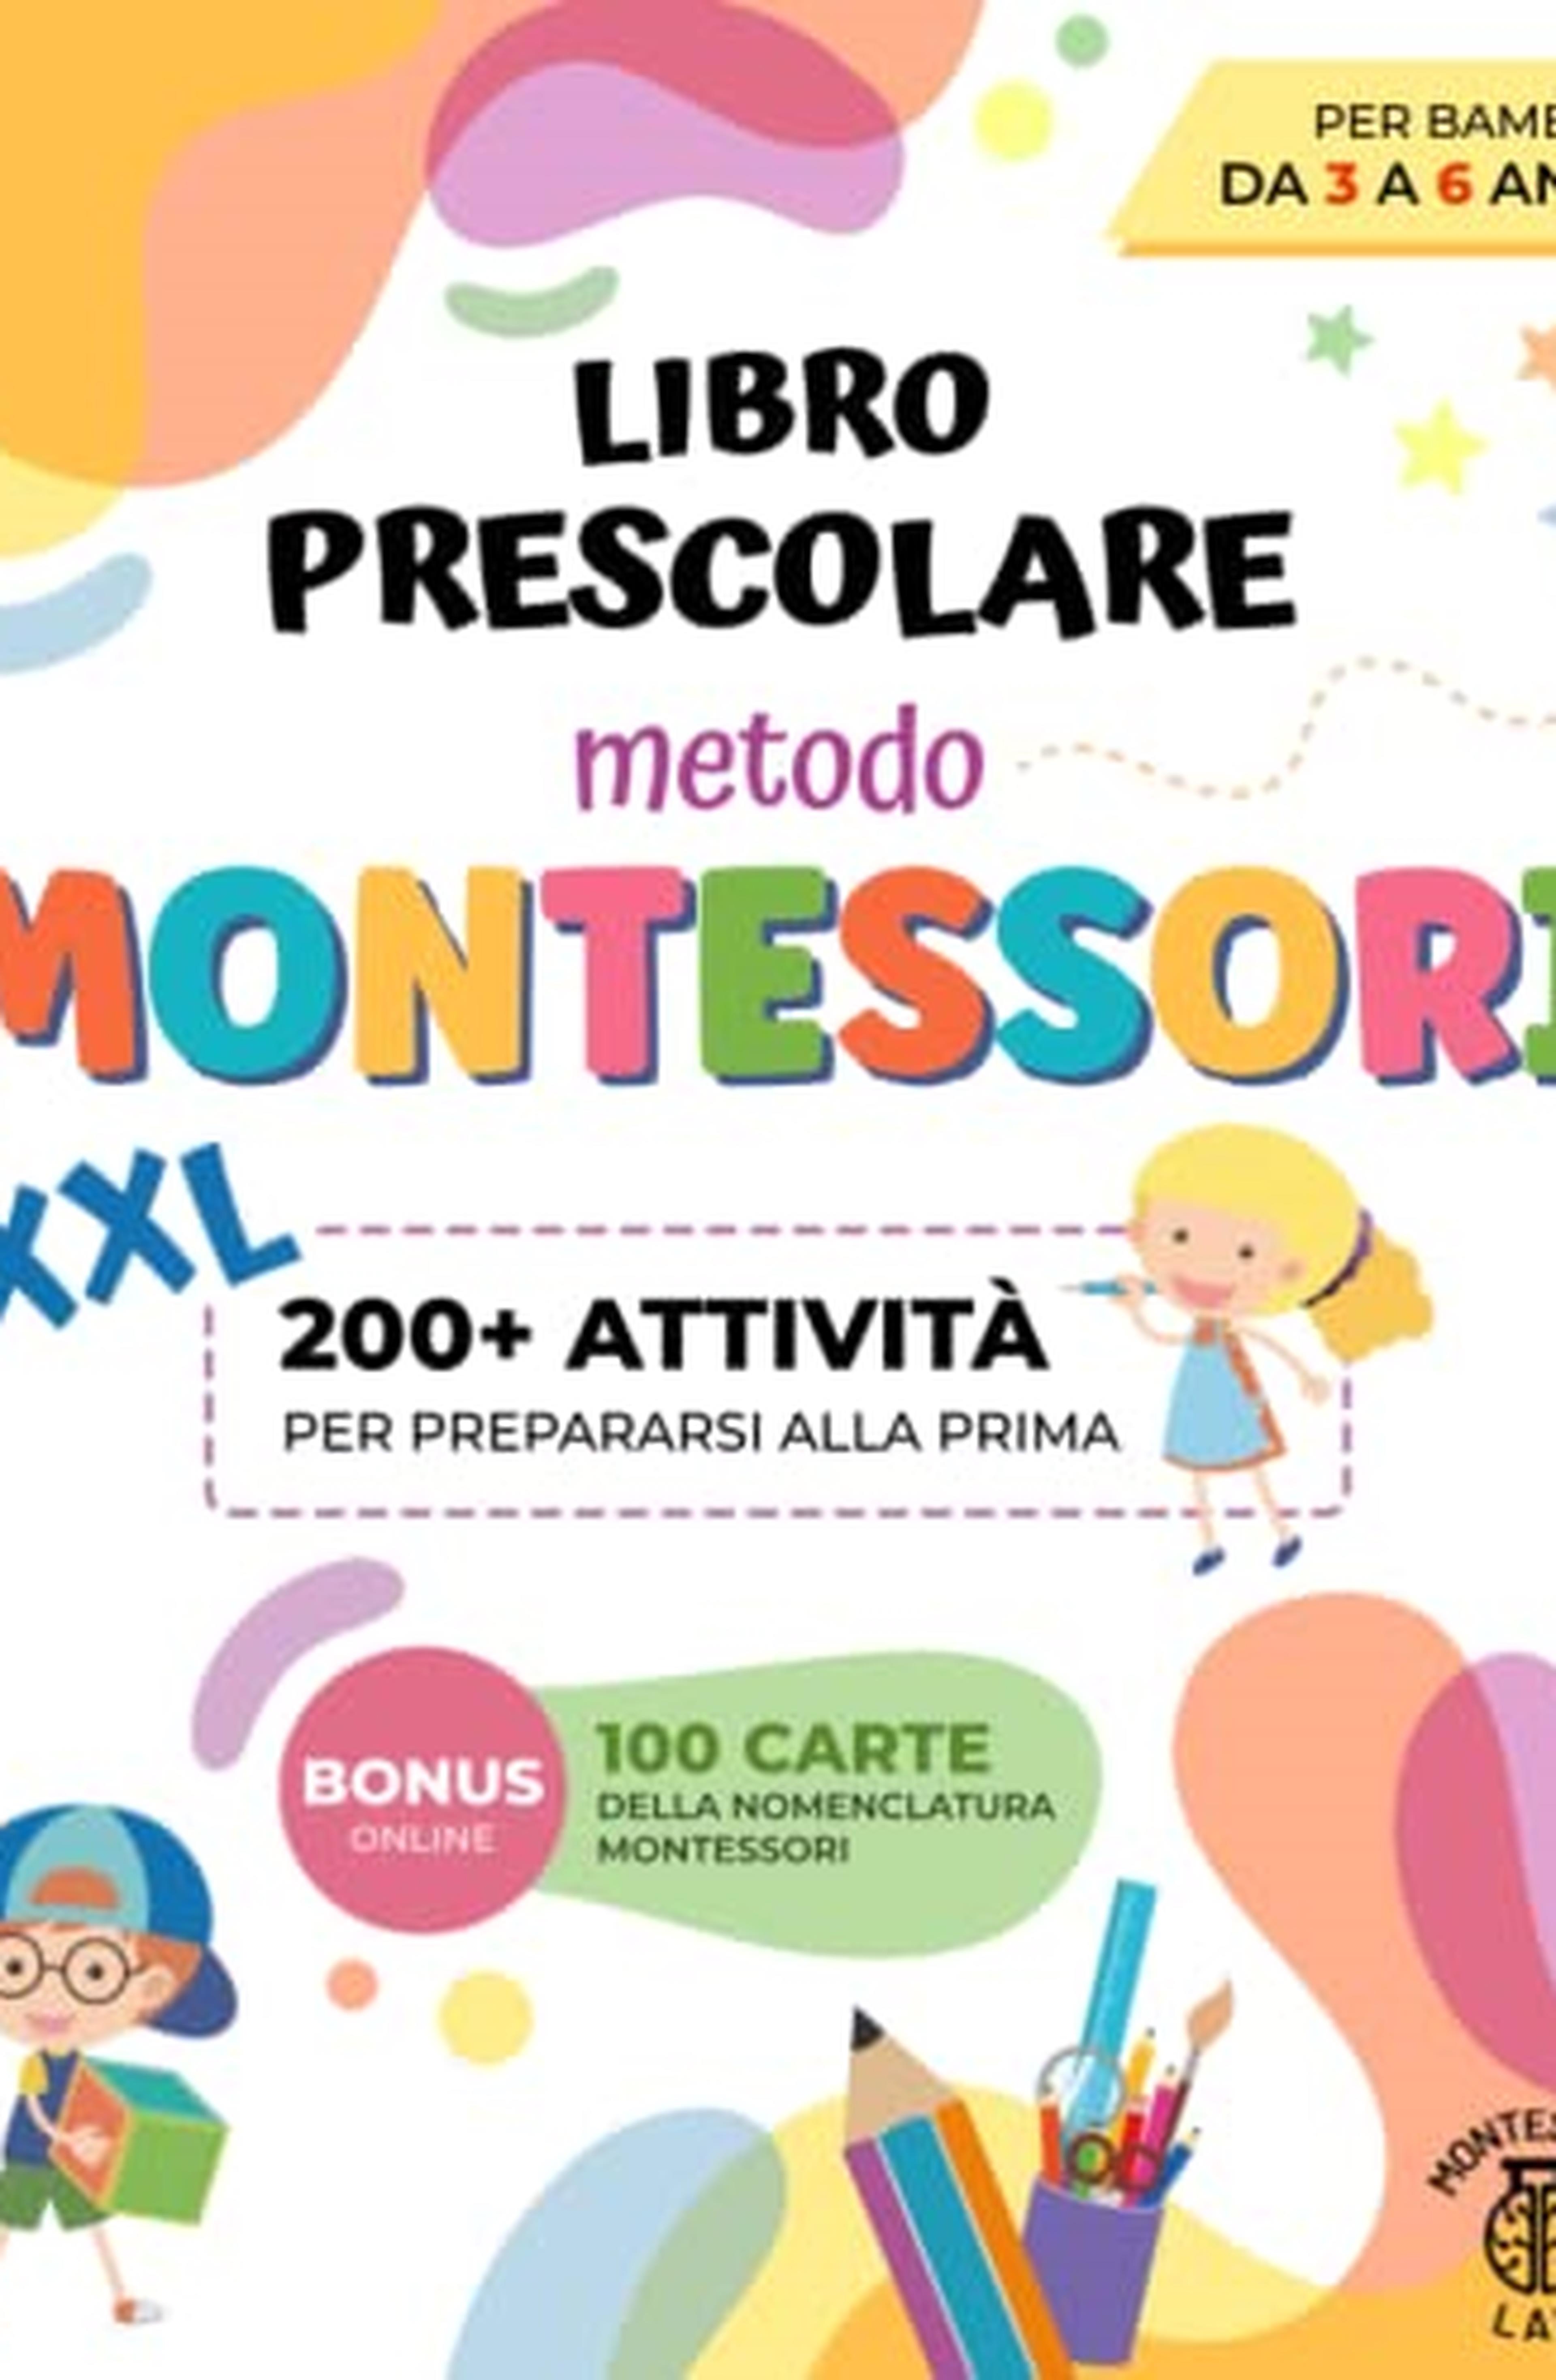 Libro Prescolare XXL - Metodo Montessori: 200+ Attività Educative e Divertenti per Bambini da 3 a 6 Anni. Prepariamoci per la prima imparando a tracciare e scrivere, contare, ritagliare e molto altro